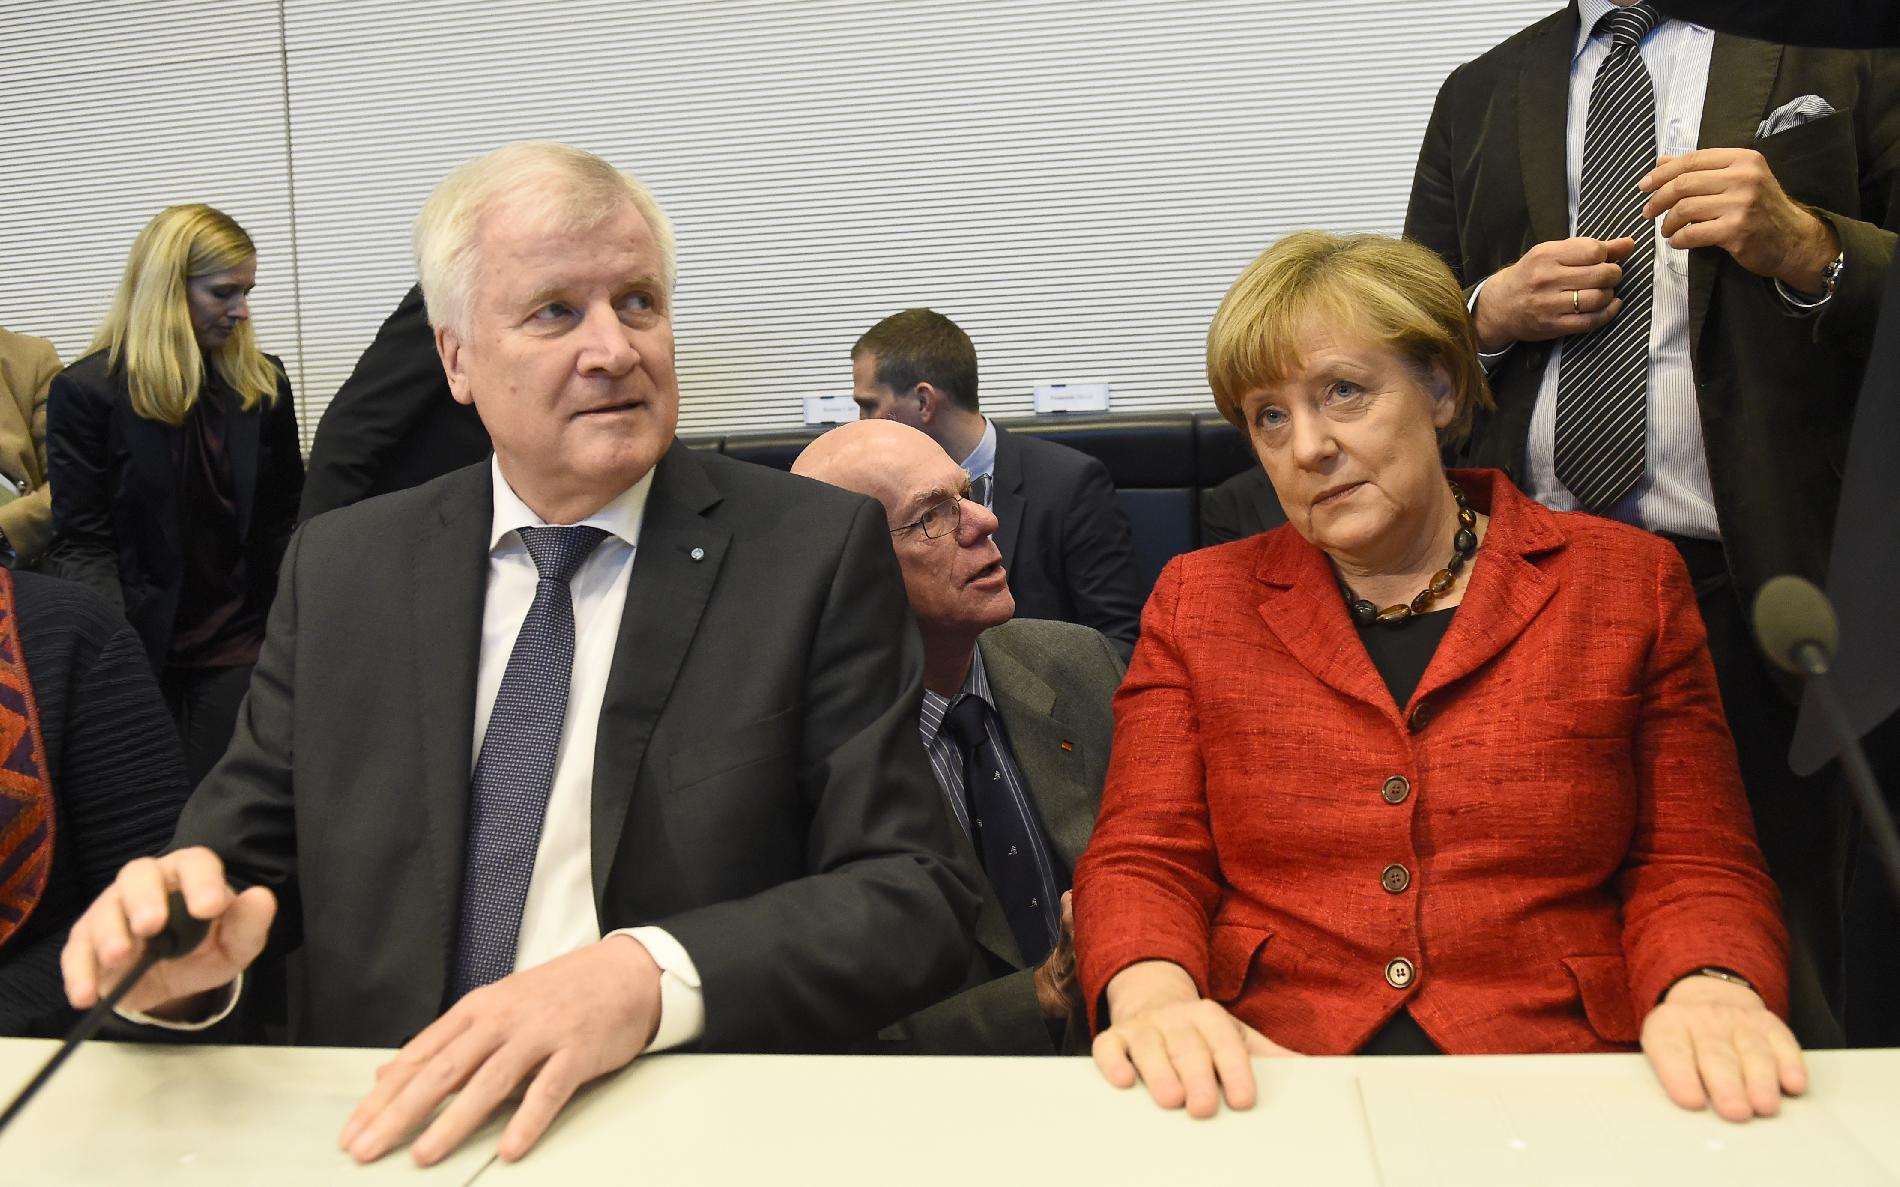 Törökországgal együttműködve véget kell vetni az illegális bevándorlásnak a görög–török uniós külső határon, és „legalizálni kell a migrációt” – mondta Angela Merkel német kancellár kedden Berlinben.